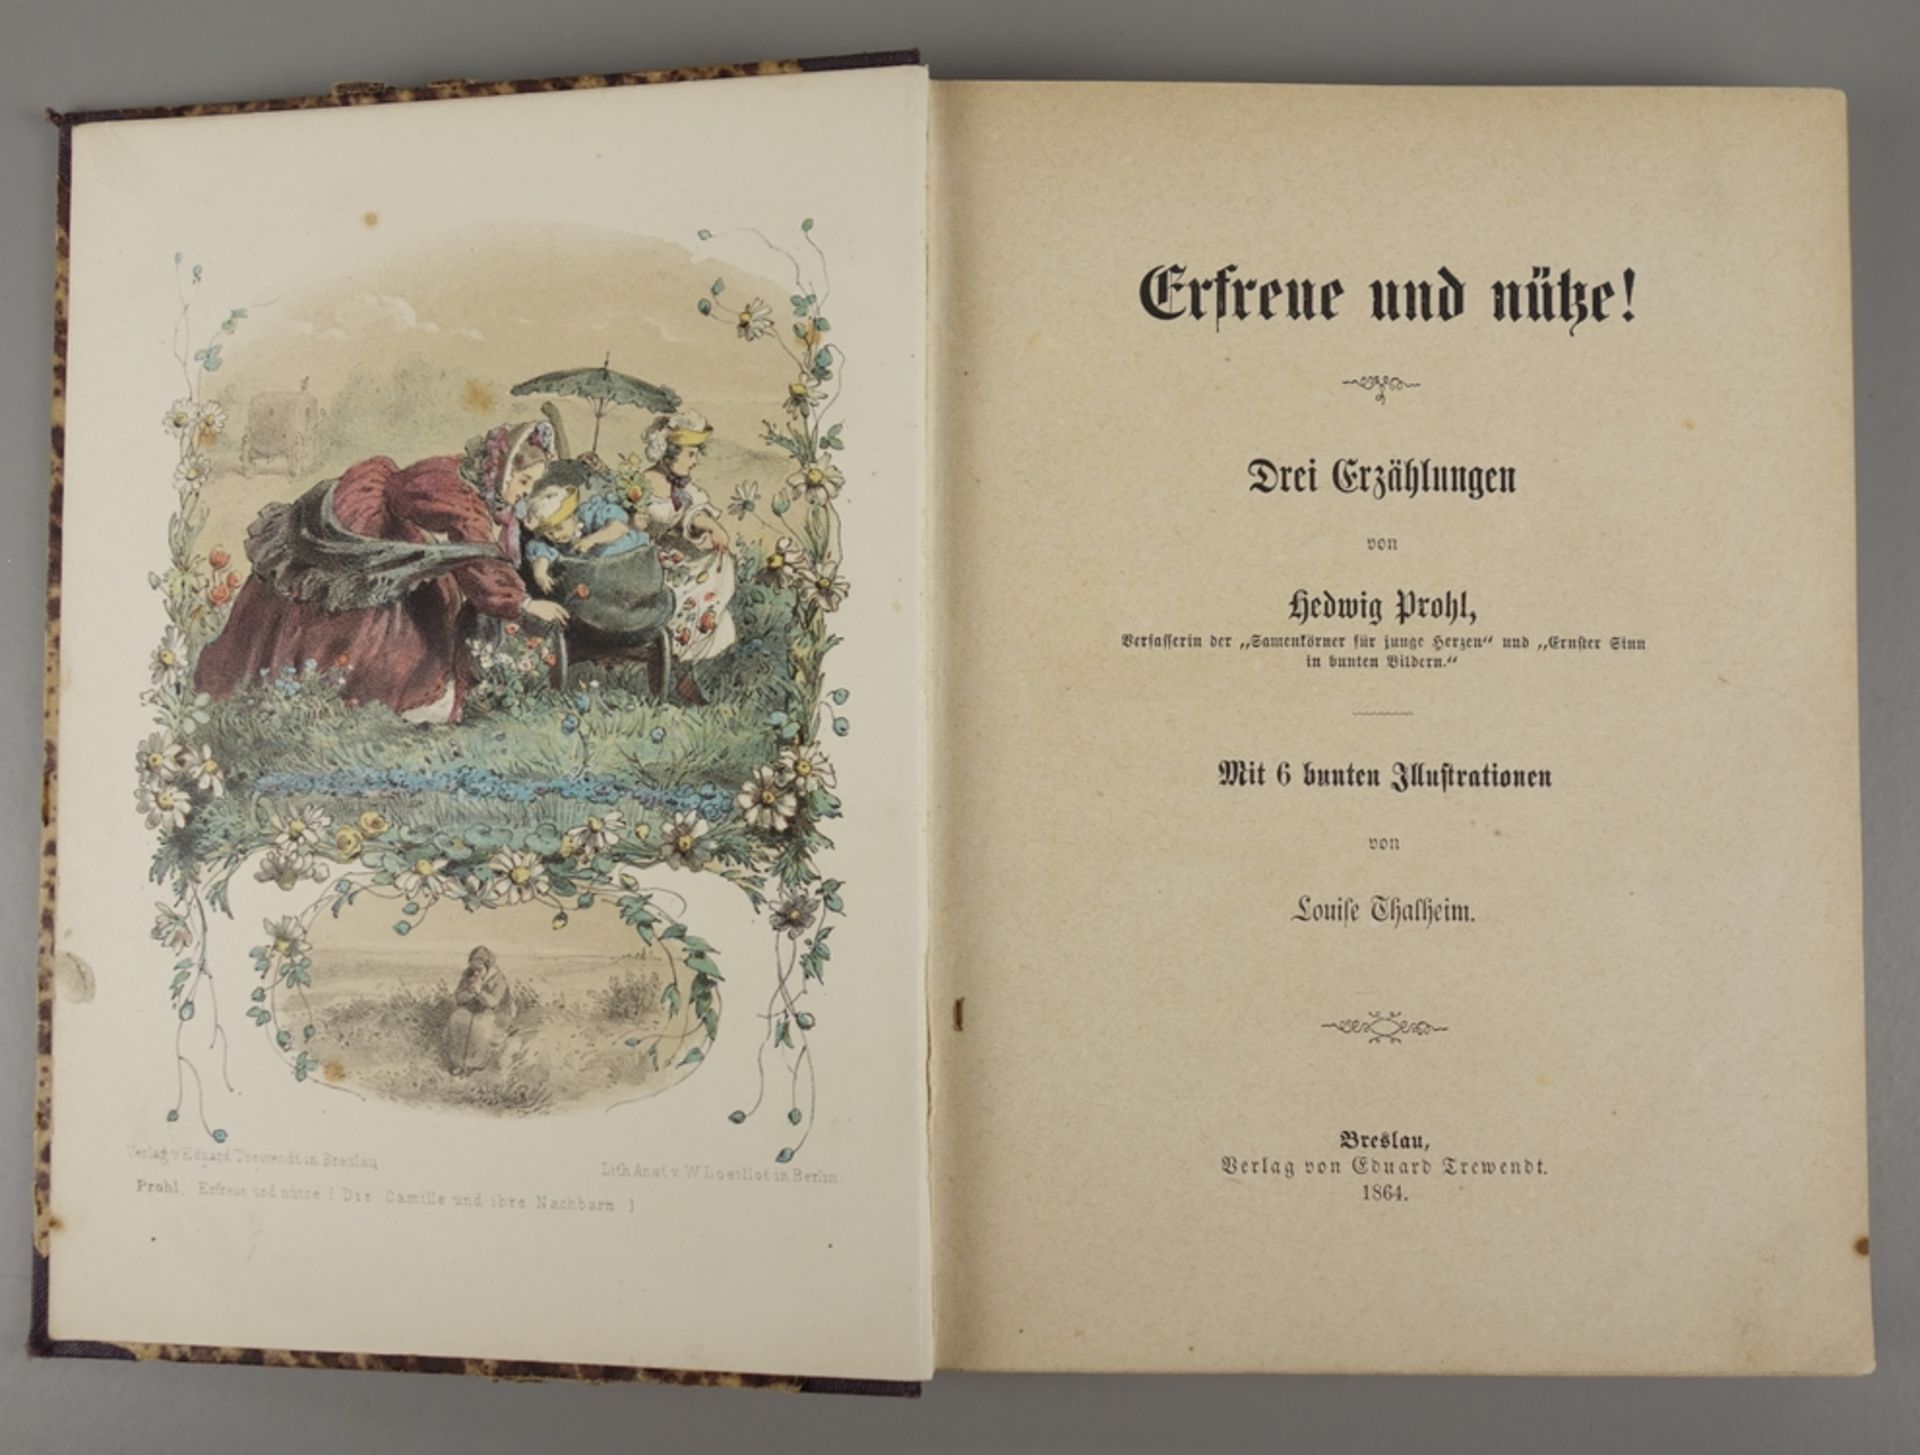 Erfreue und nütze !, Drei Erzählungen von Hedwig Prohl, 1864